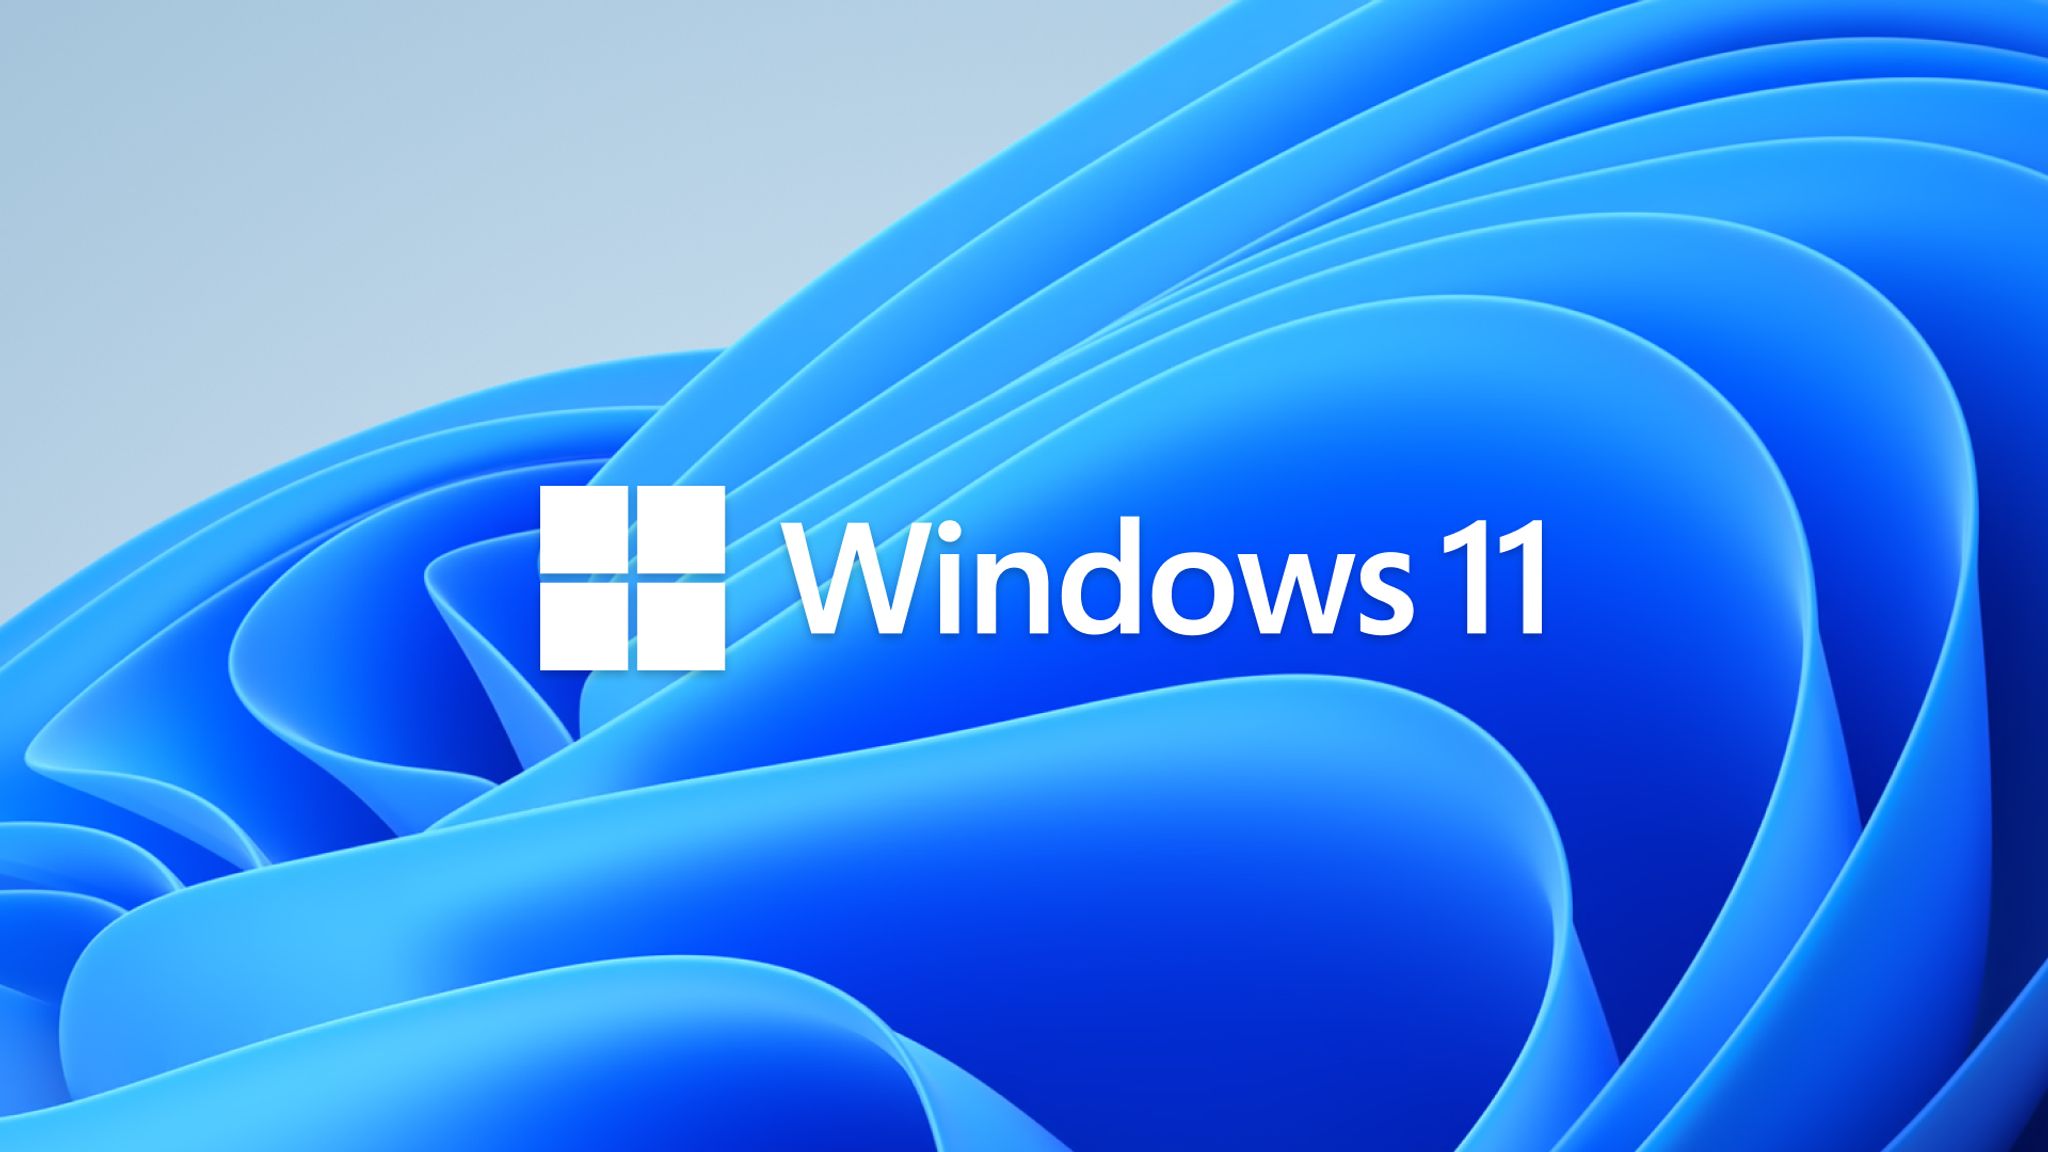 Ha llegado Windows 11, con esquinas redondeadas y nuevas funciones - Infobae